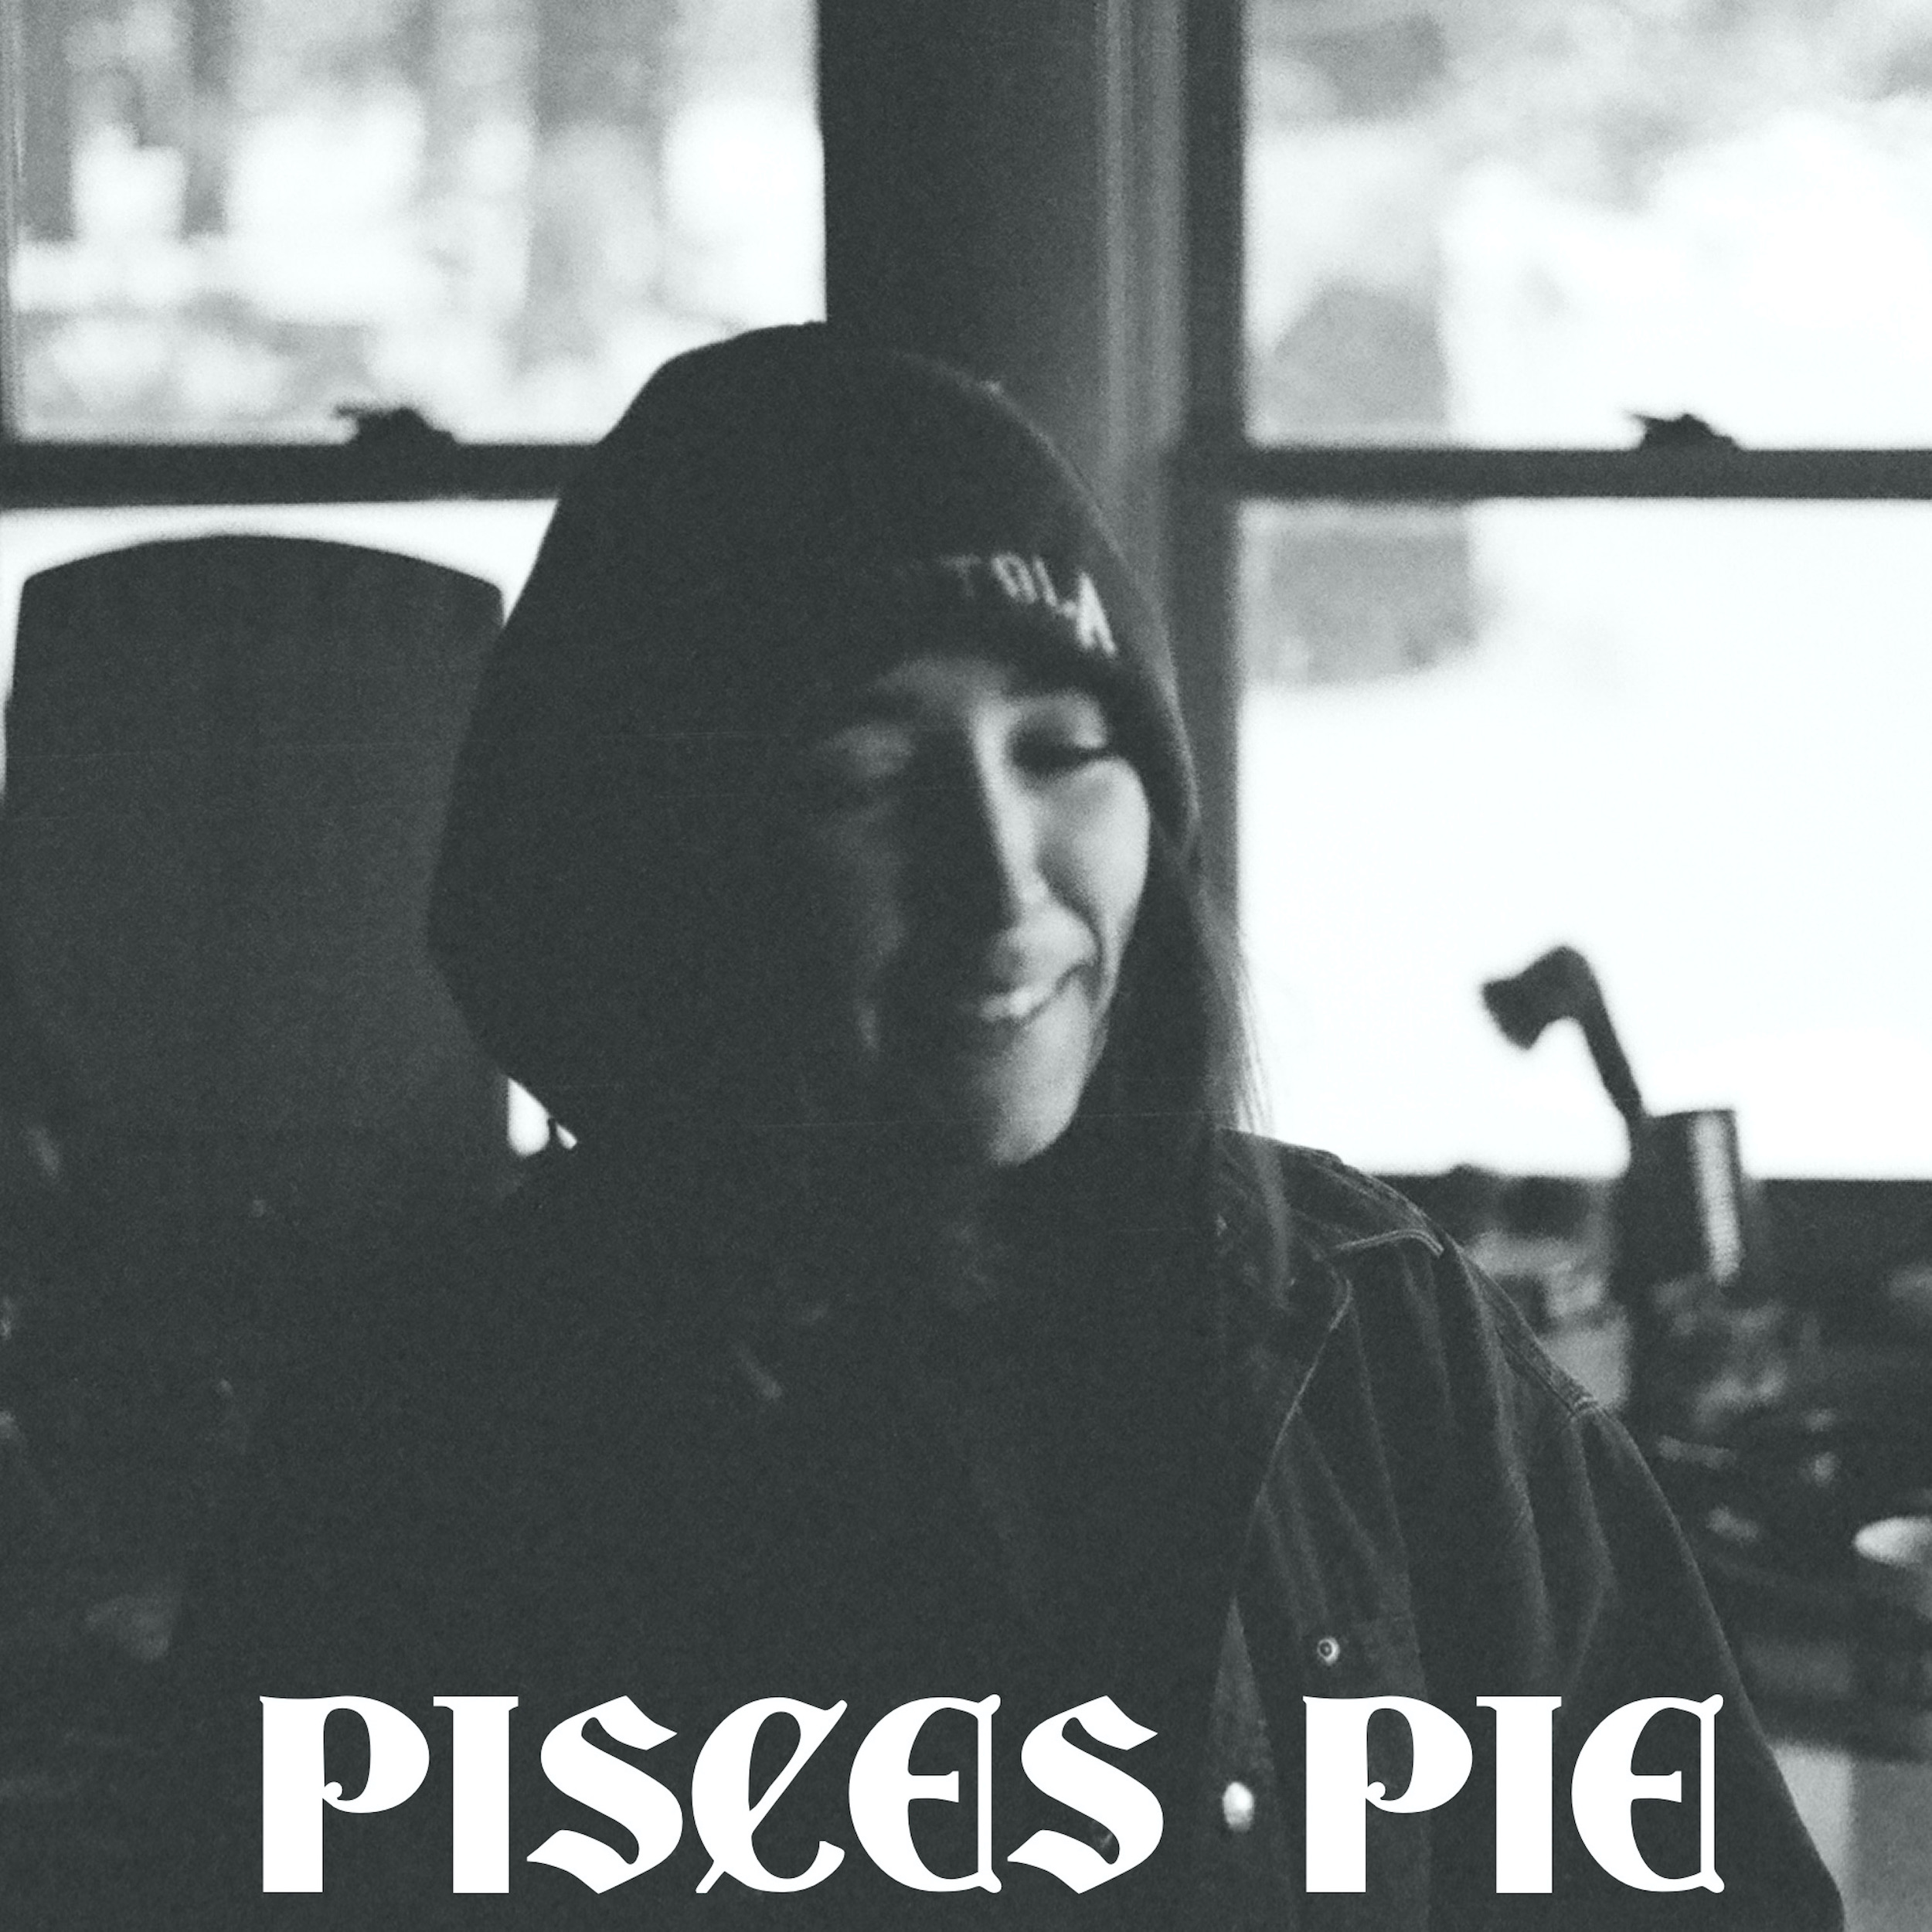  Descubre “Pisces Pie”: El nuevo álbum de Odelet que fusiona Hip-Hop clásico y Jazz